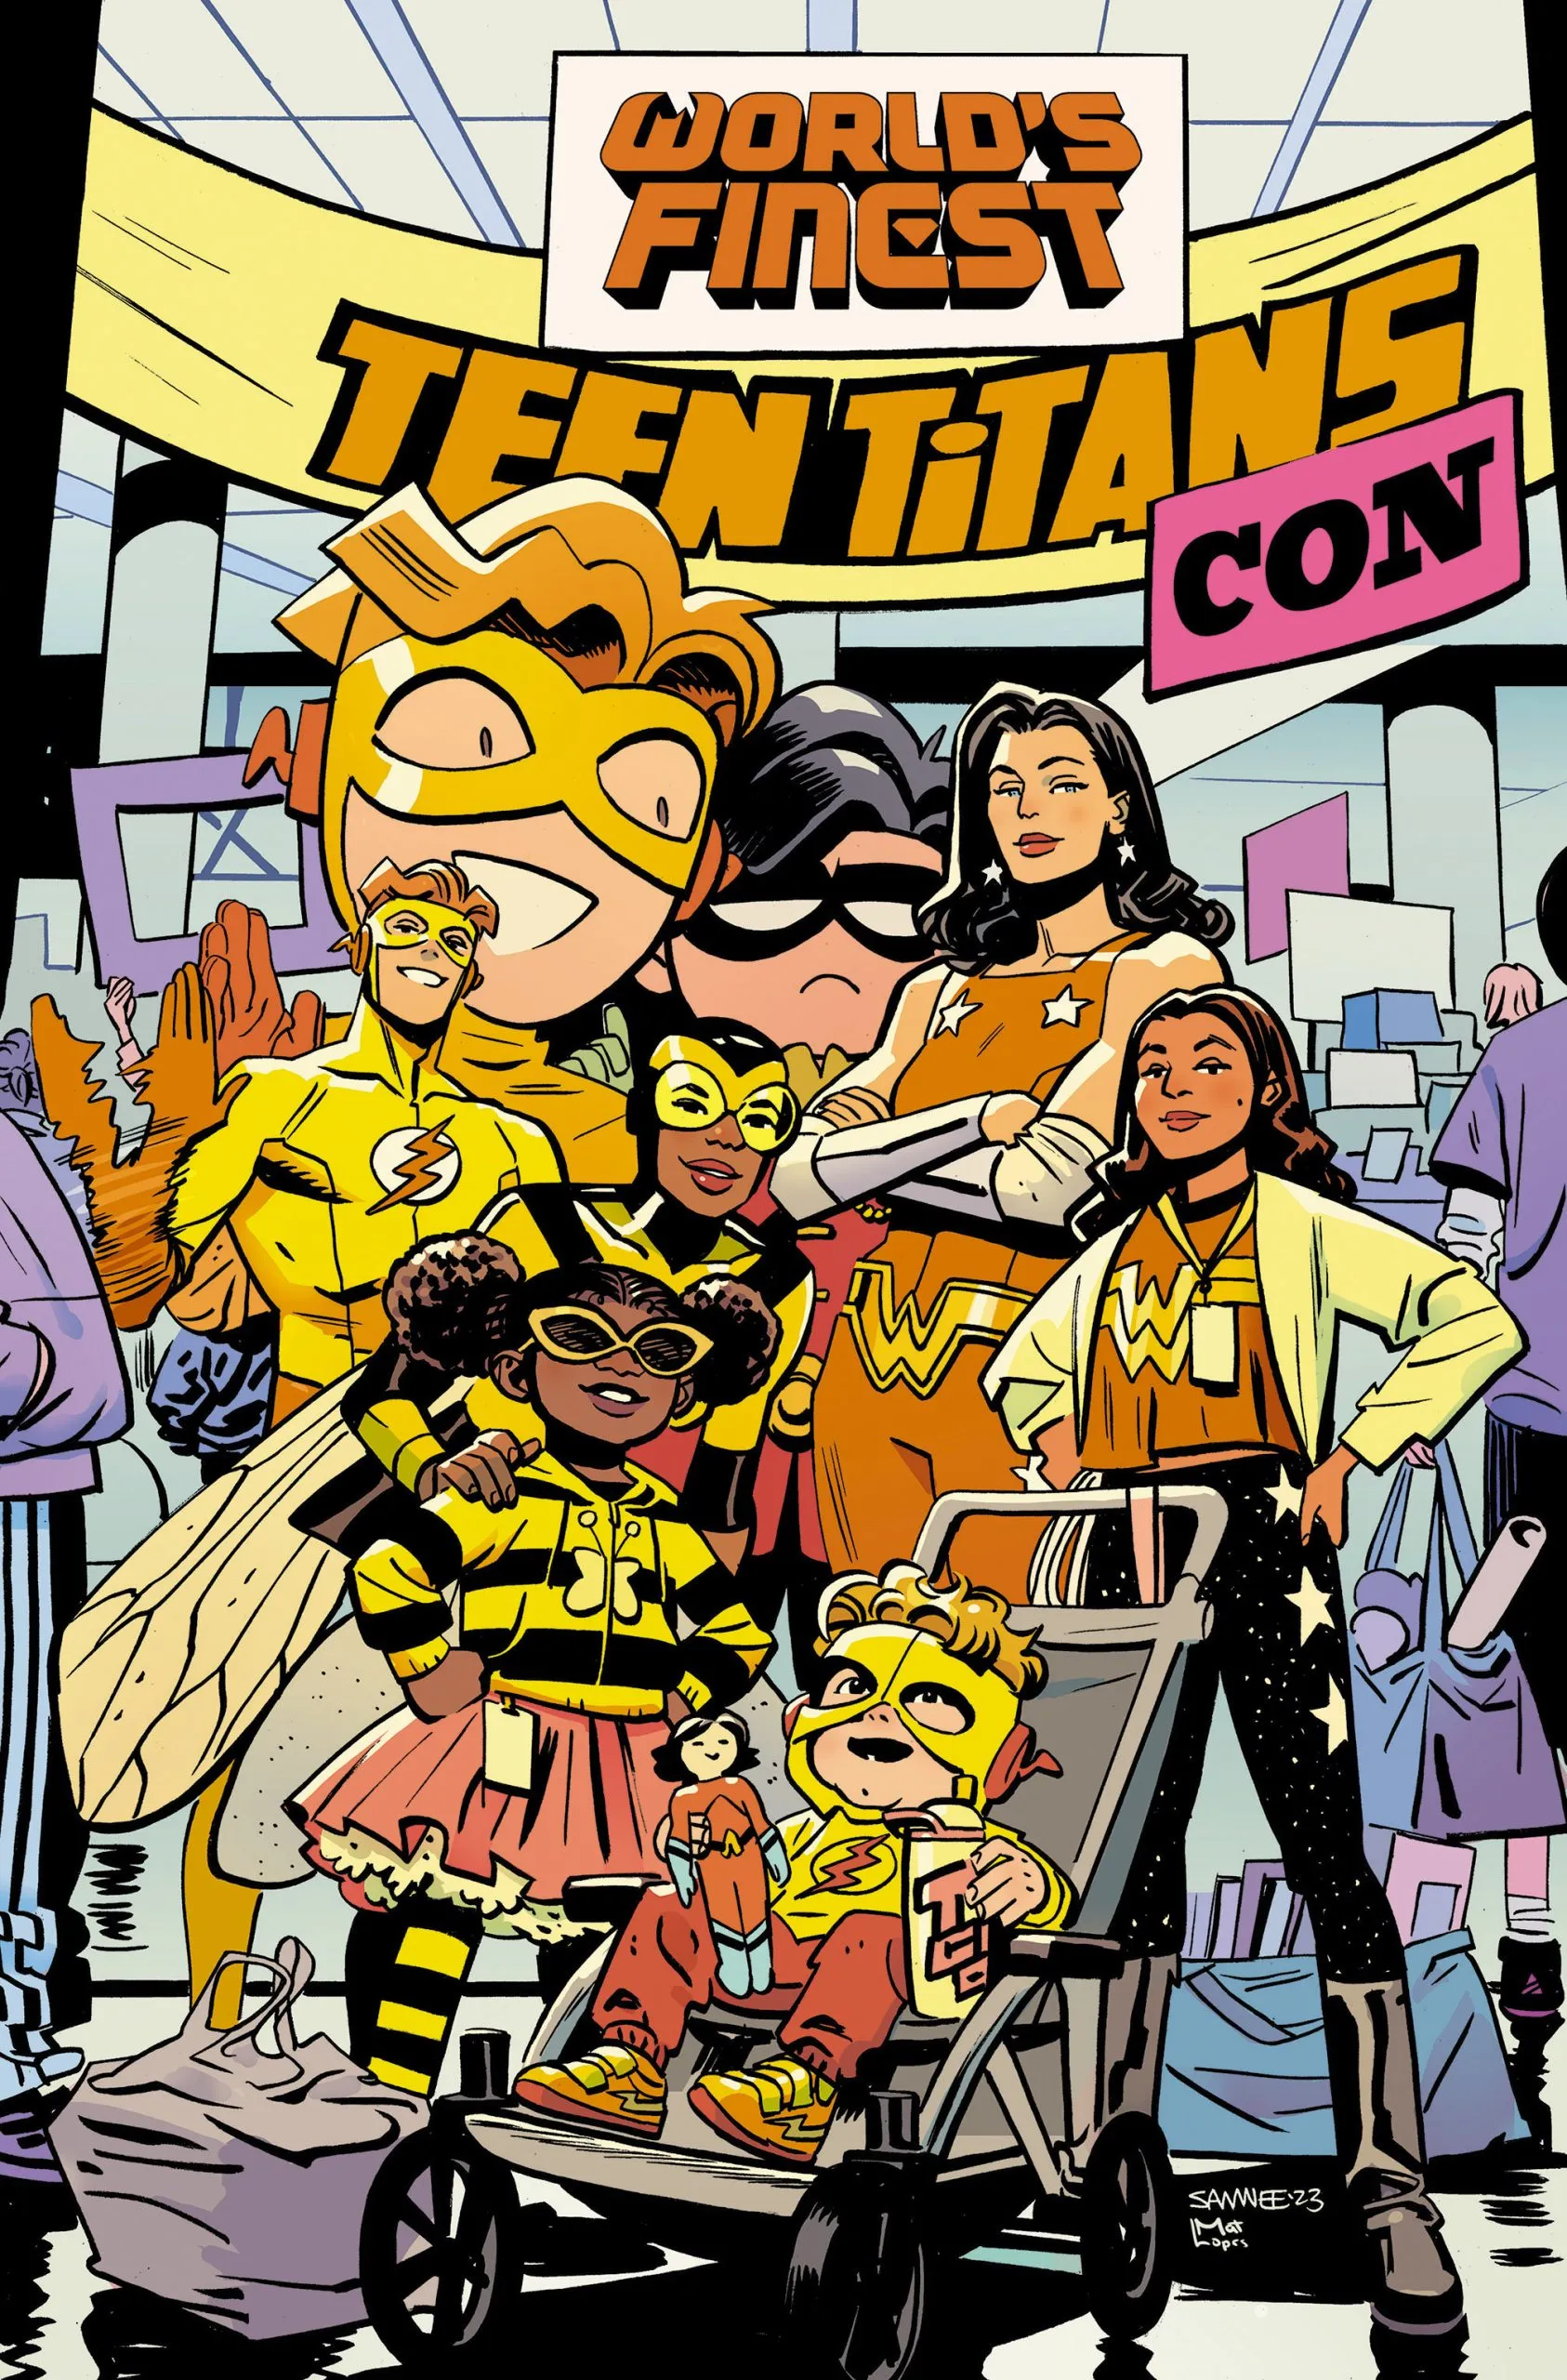 World's Finest Teen Titans #3 A